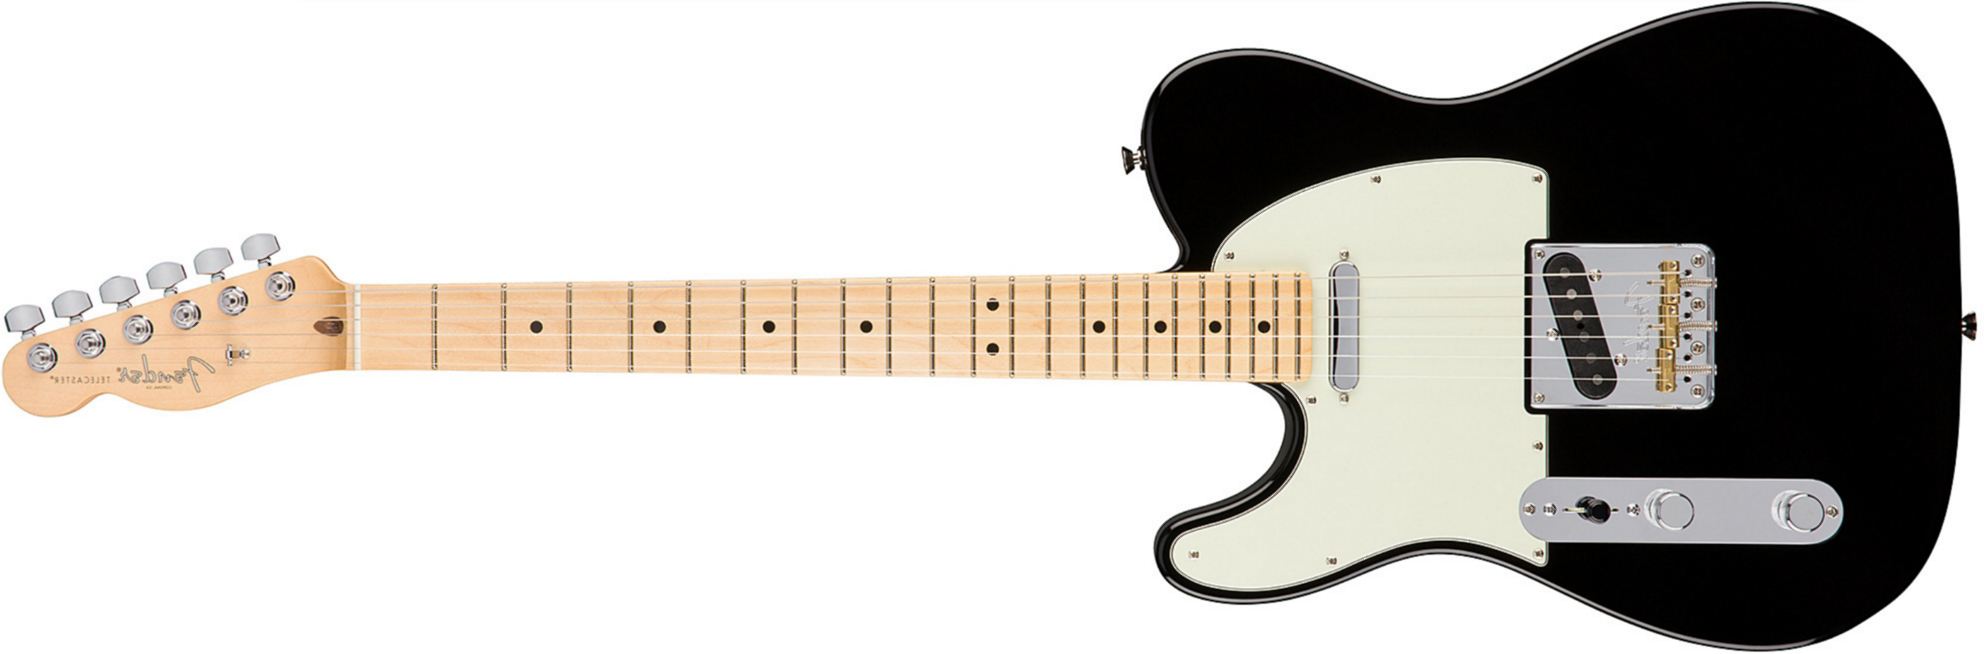 Fender Tele American Professional Lh Usa Gaucher 2s Mn - Black - Linkshandige elektrische gitaar - Main picture